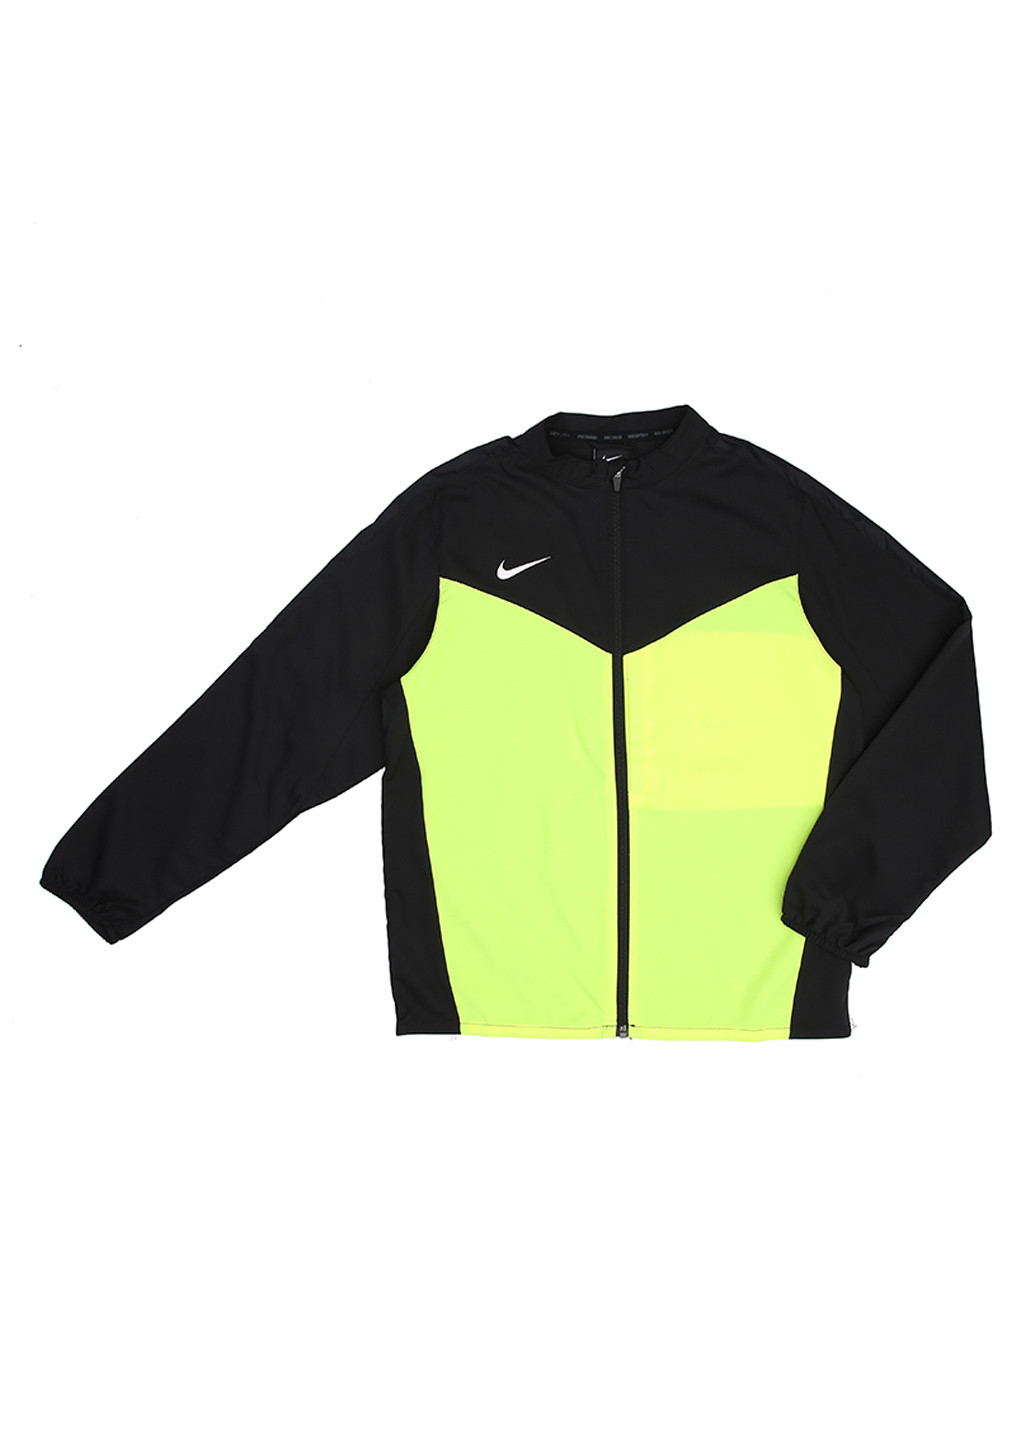 Салатовая демисезонная ветровка Nike Team Performance Shield Jacket